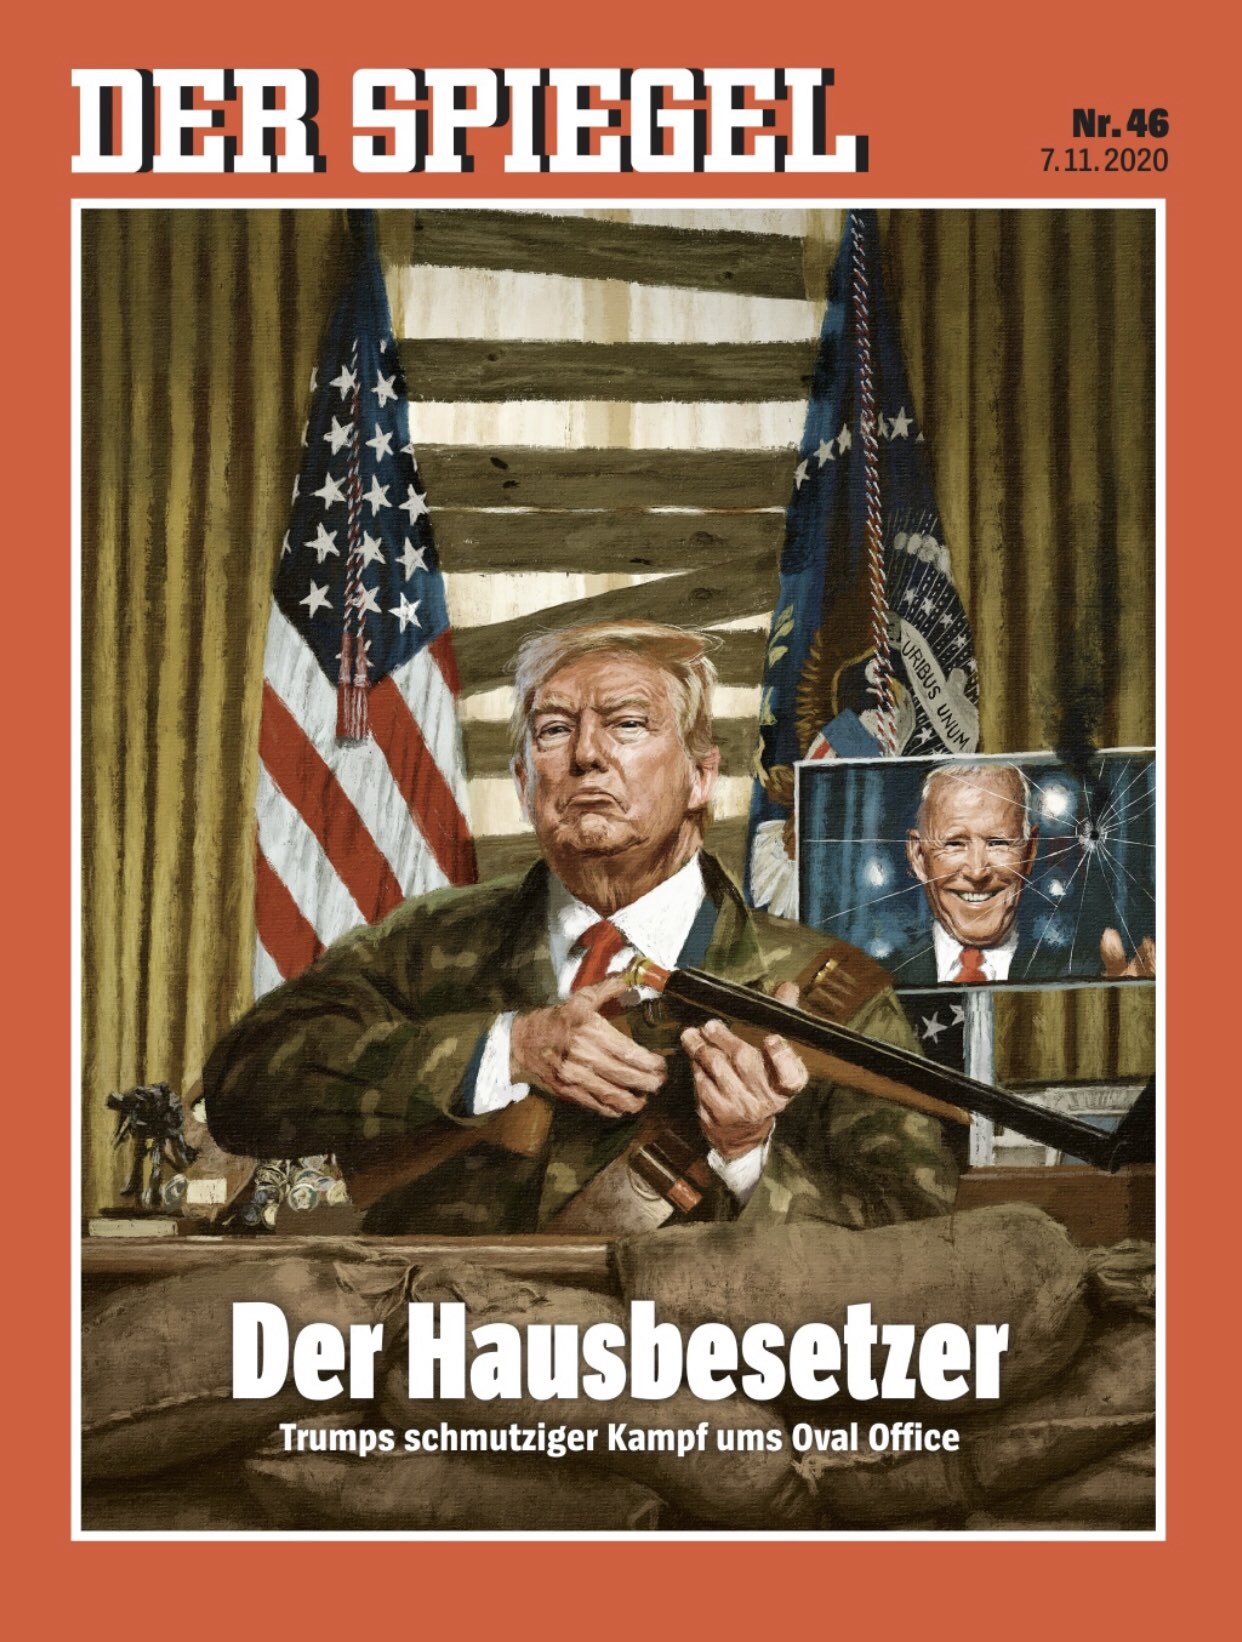 Der Spiegel Trump